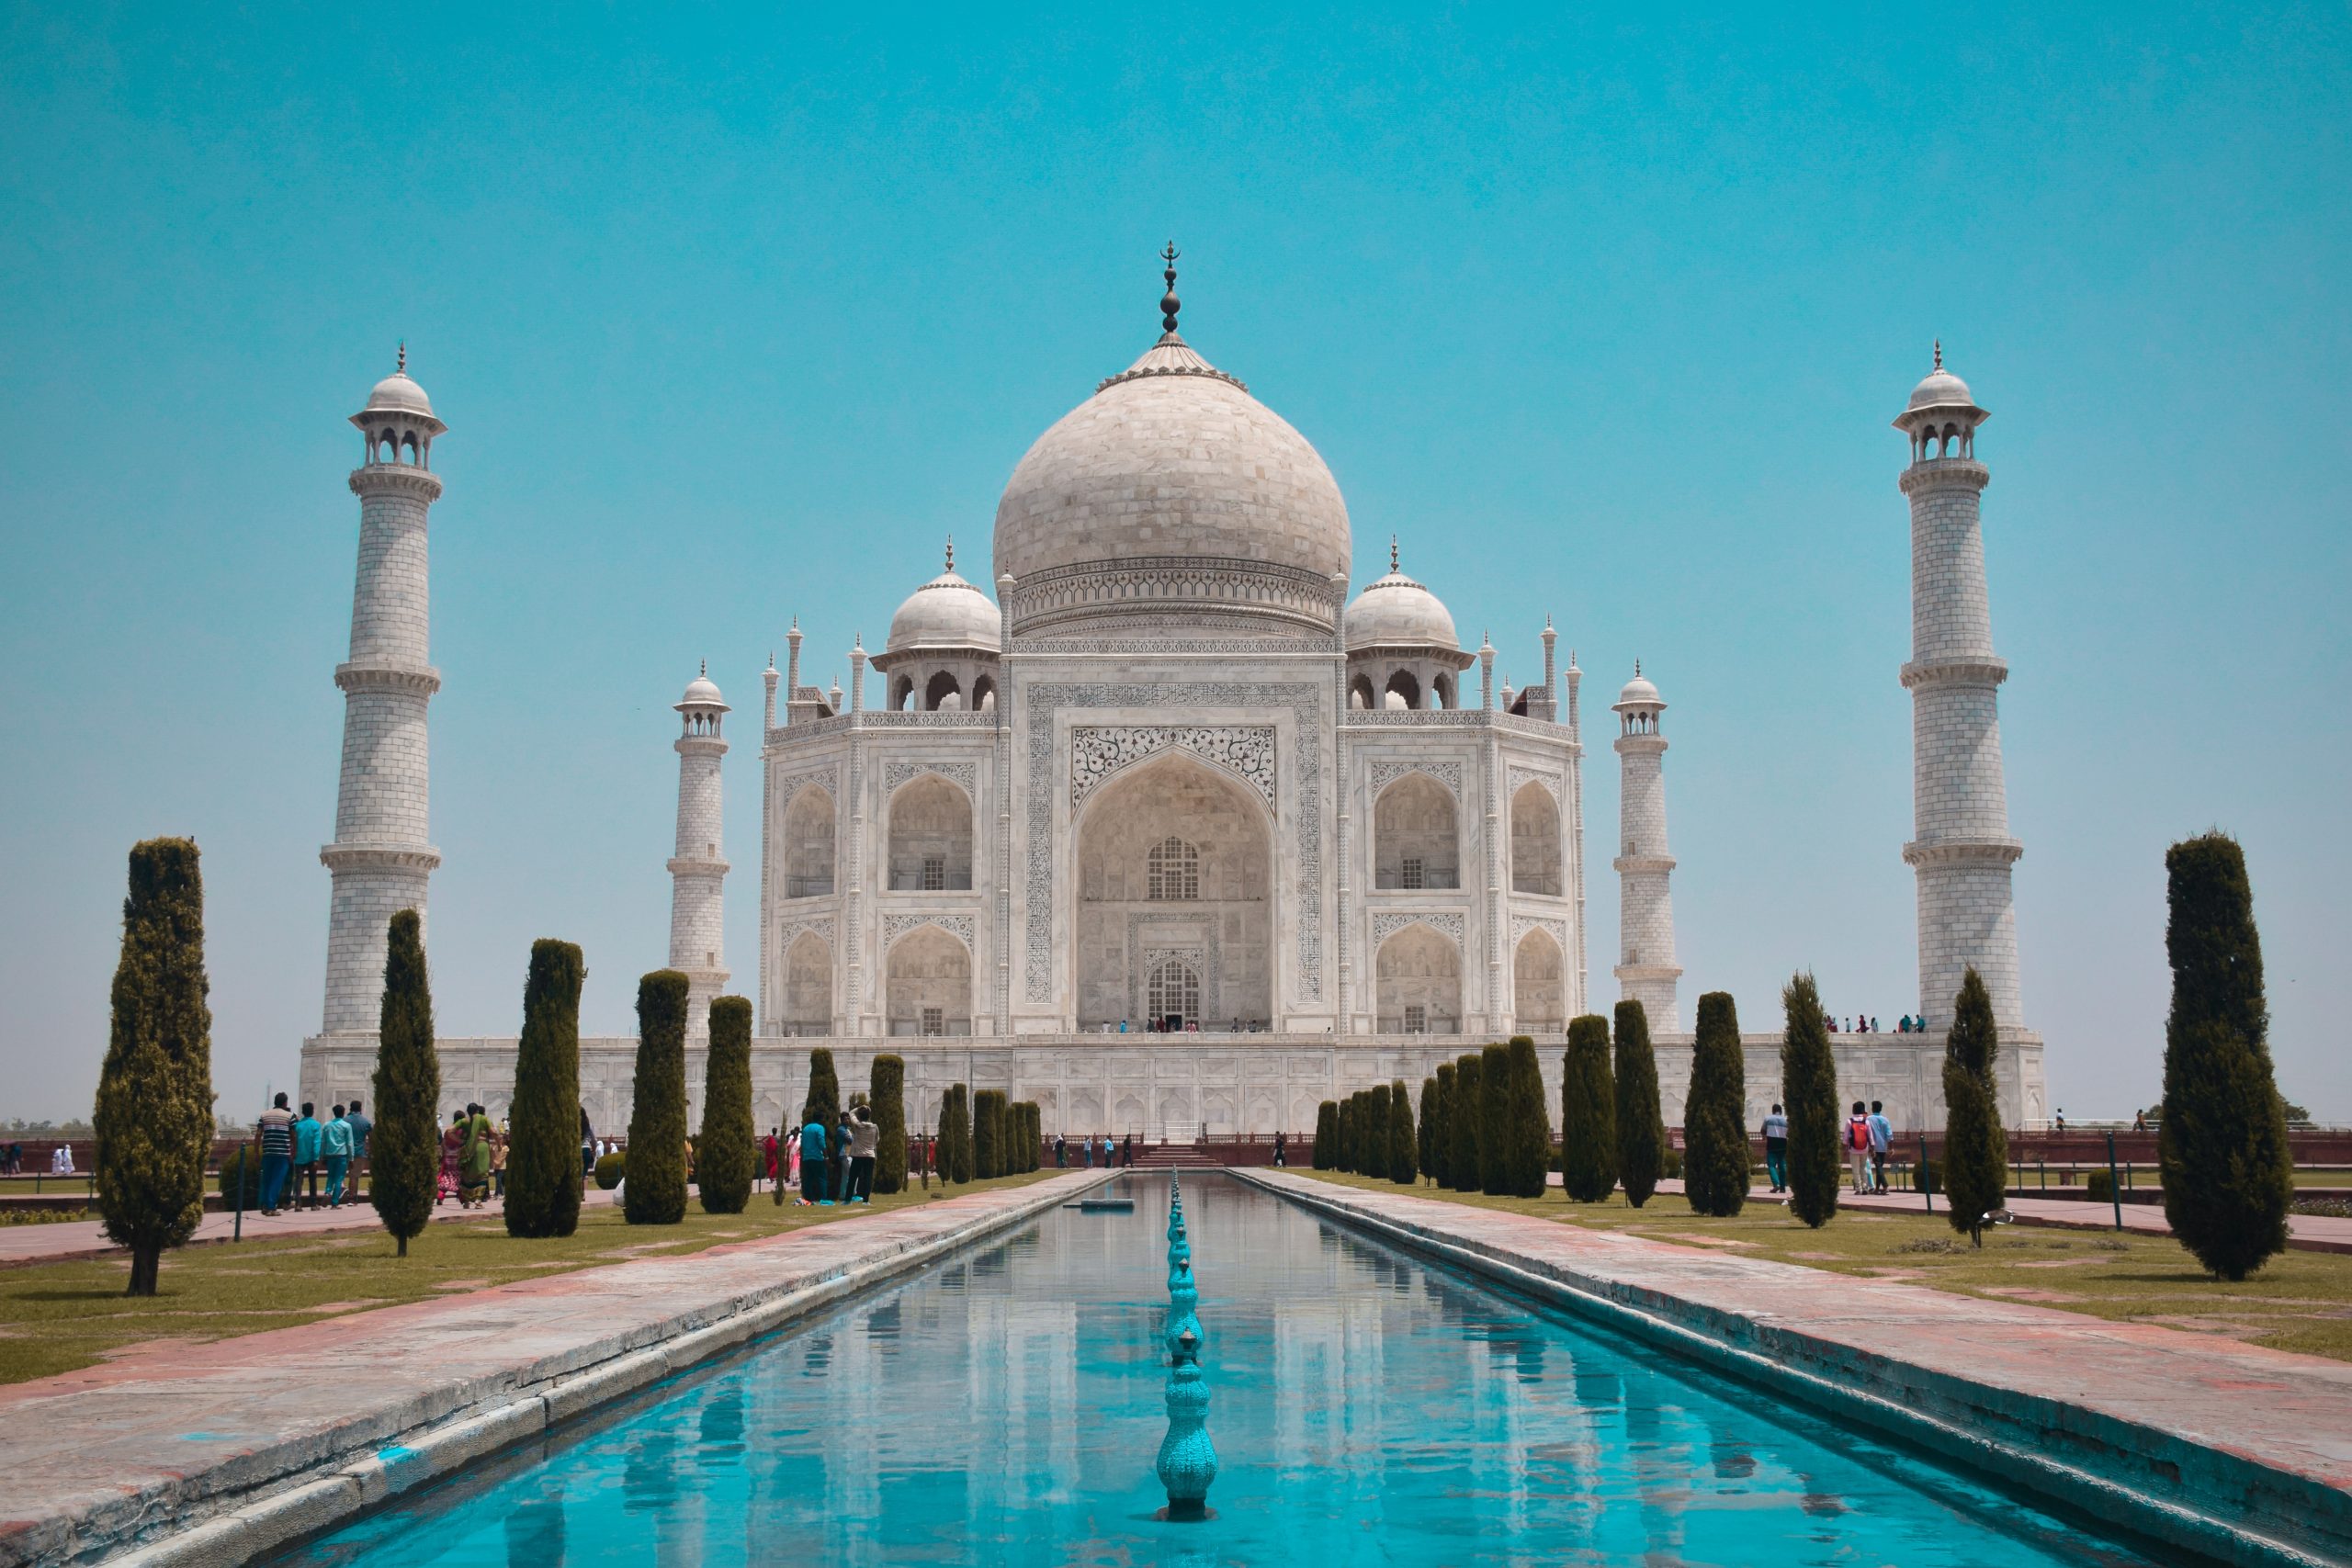 A história por trás da construção do Taj Mahal - Blog Casa da Índia | E-commerce especialista em produtos artesanais indianos de decoração, roupas e cosméticos naturais.